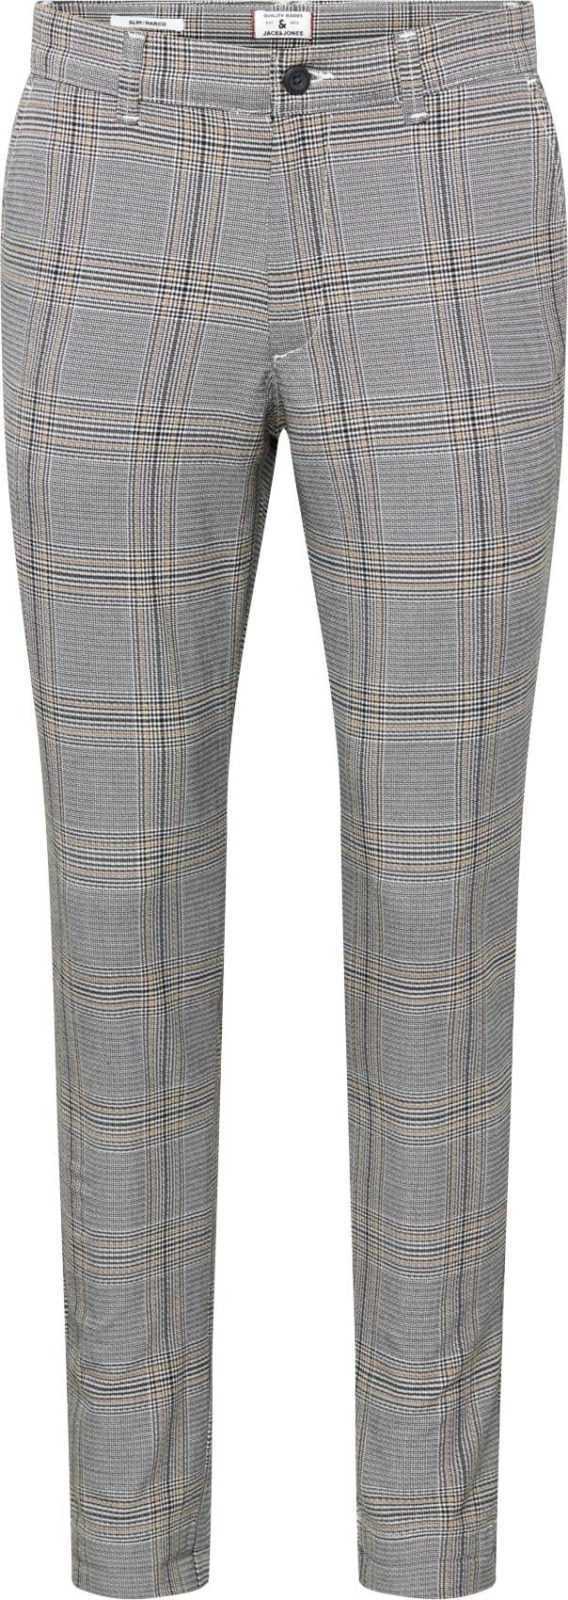 JACK & JONES Chino kalhoty 'Marco Stuart' světle béžová / šedá / bílá